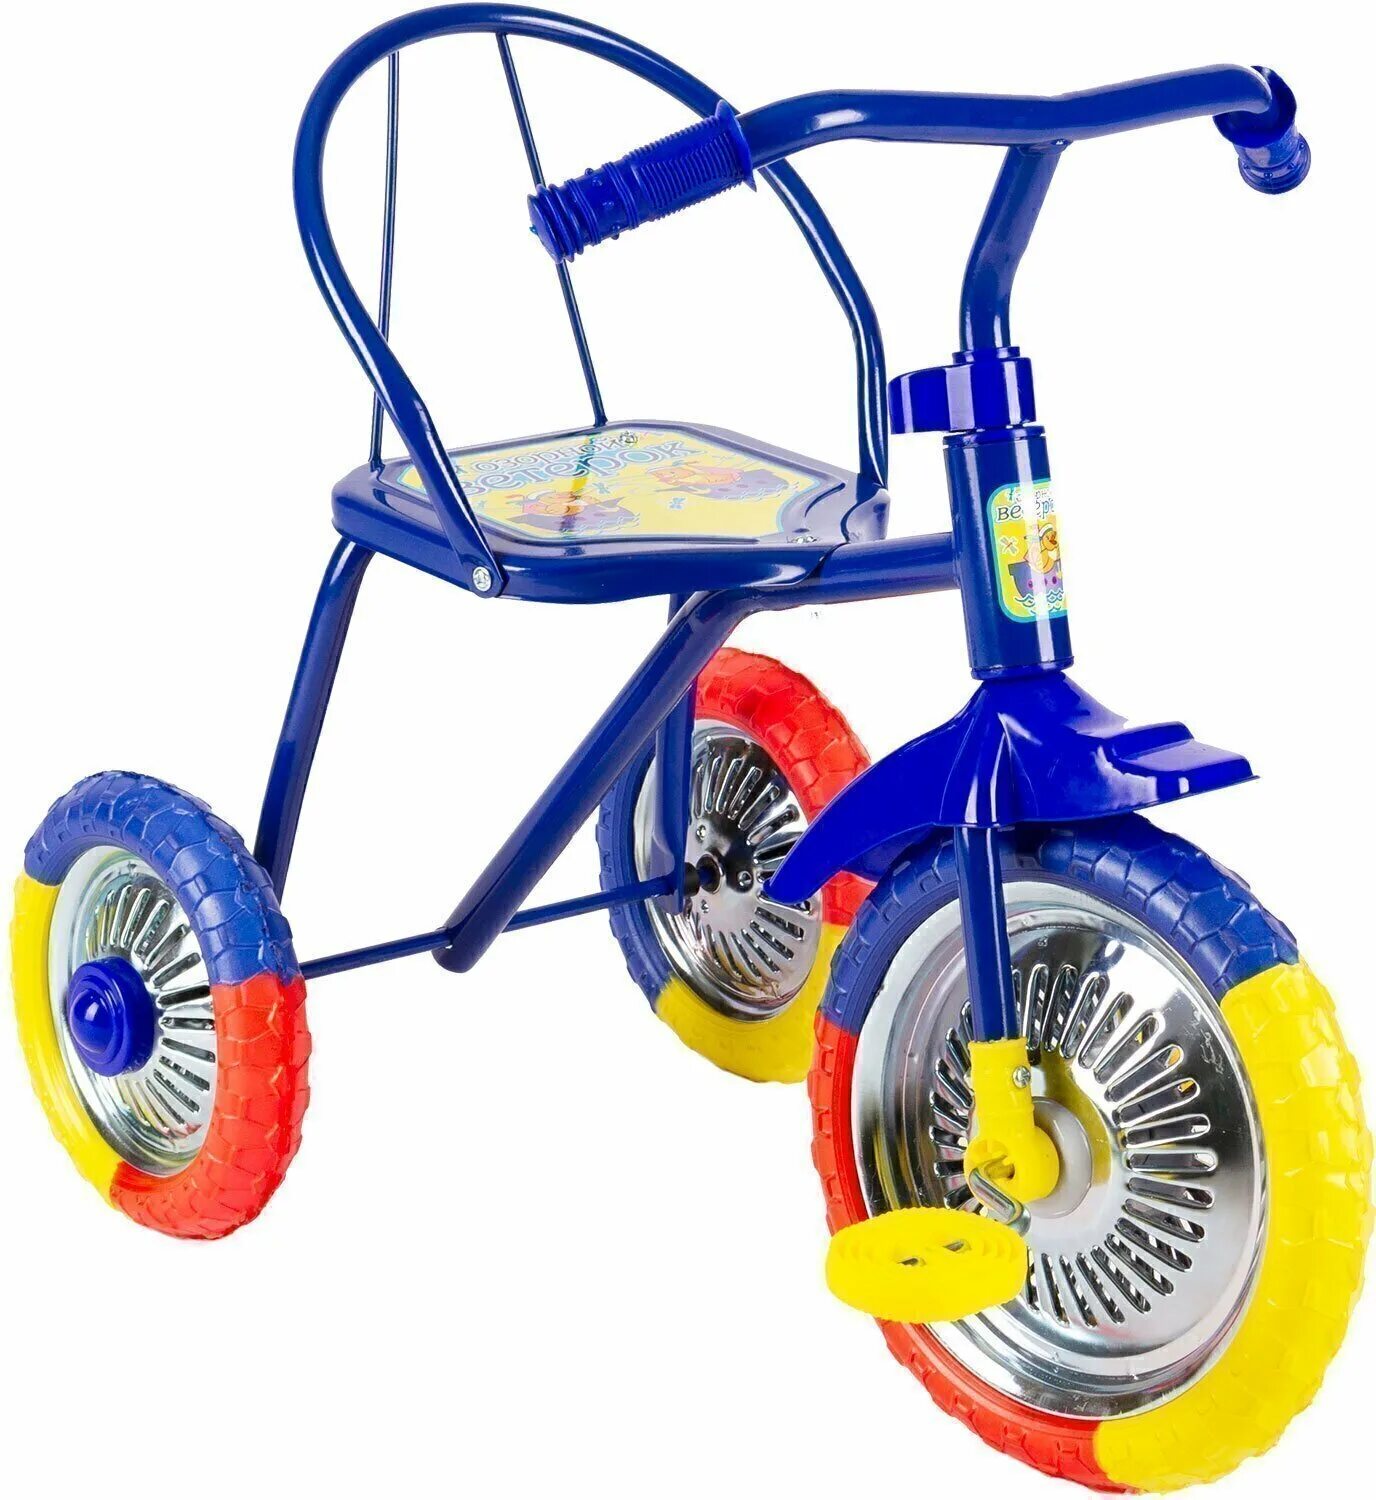 Трехколесный велосипед купить минск. Велосипед трёхколёсный детский lh702. Велосипед 3-х озорной ветерок GV-b3-2mx цвета микс. Велосипед озорной ветерок GV-b3-2mx. Трехколесный велосипед озорной ветерок 10" GV-b3-2mx, желтый.